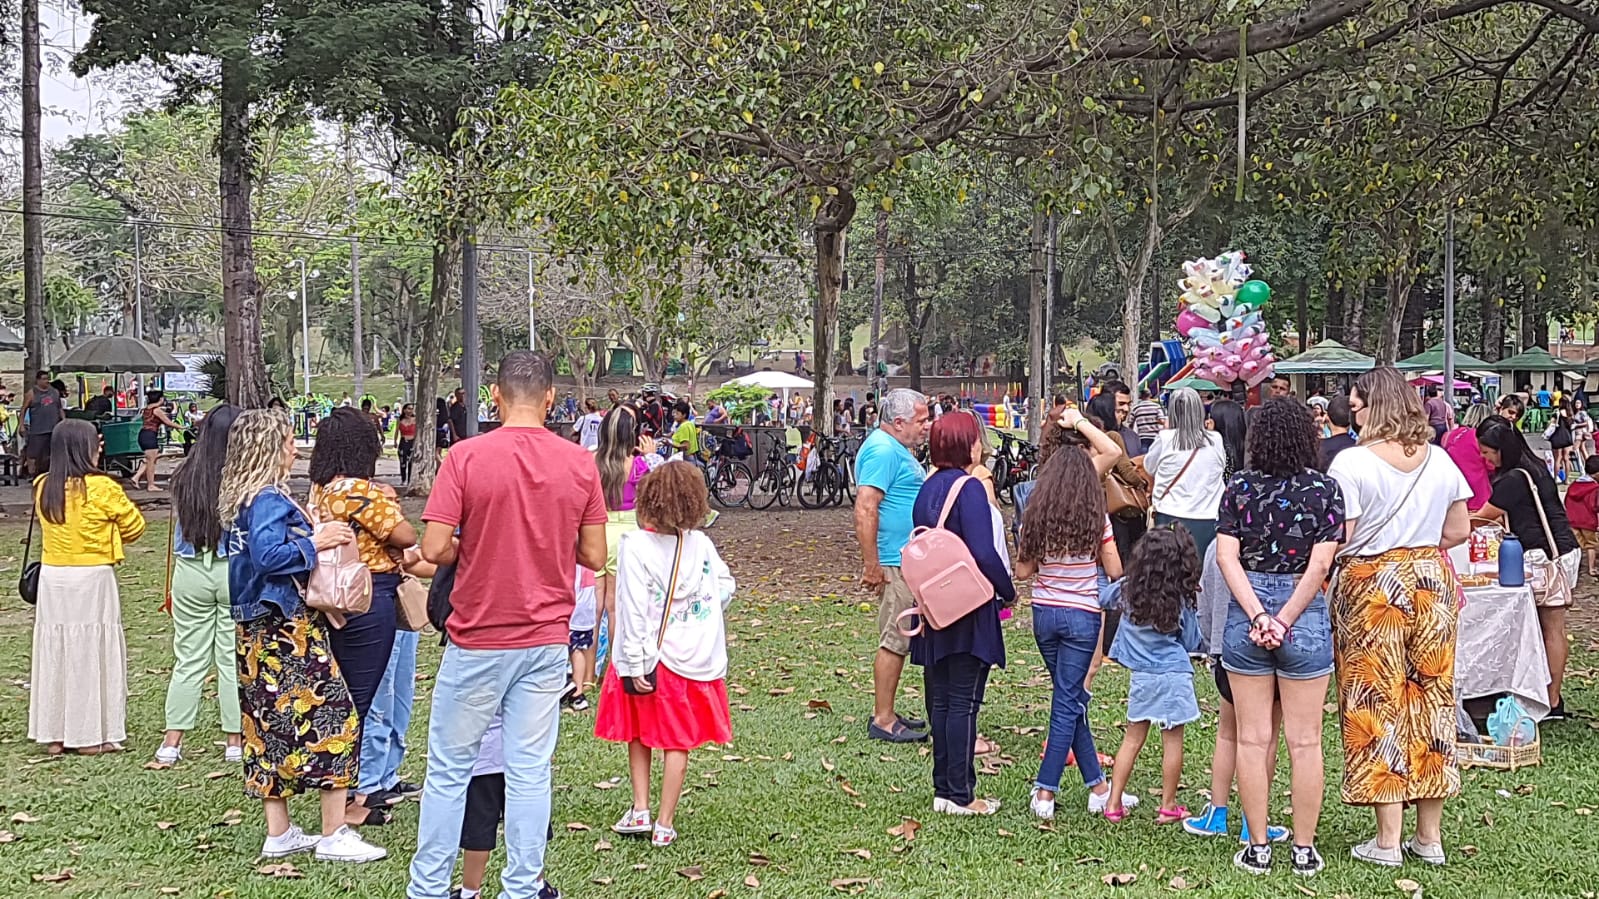 Quinta da Boa Vista recebe programação especial de Dia das Crianças